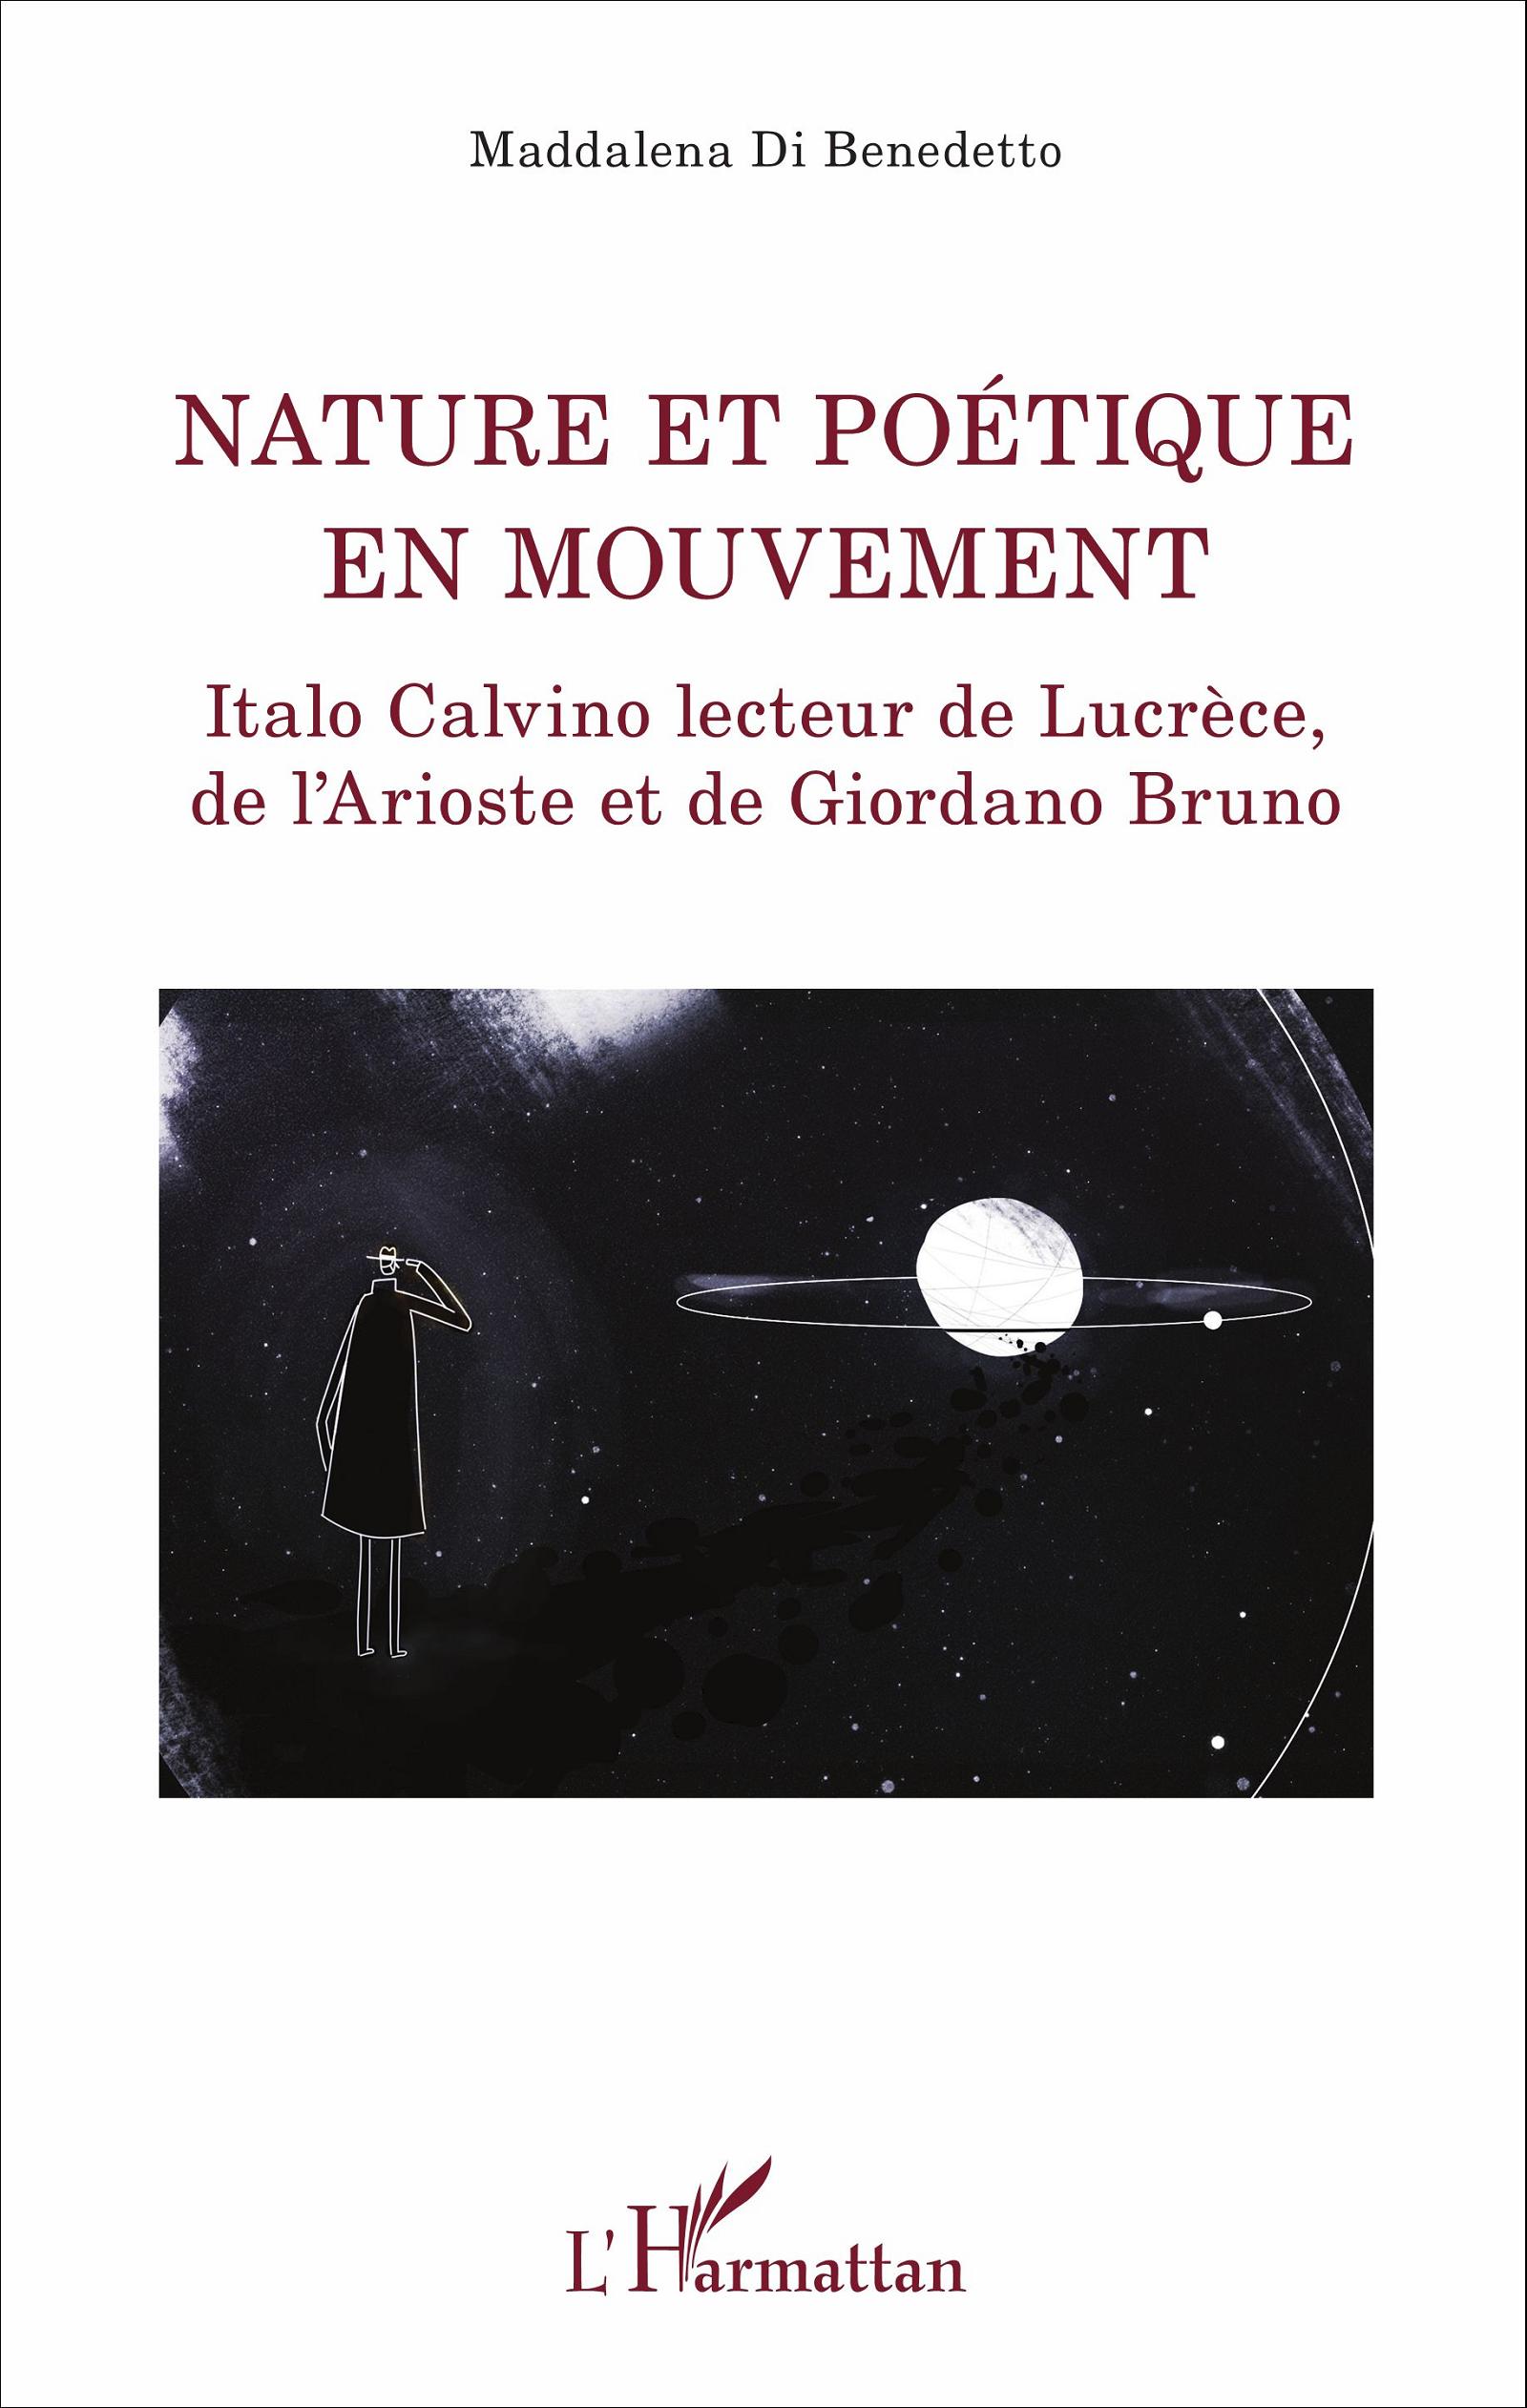 M. Di Benedetto, Nature et poétique en mouvement - Italo Calvino lecteur de Lucrèce, de l'Arioste et Giordano Bruno